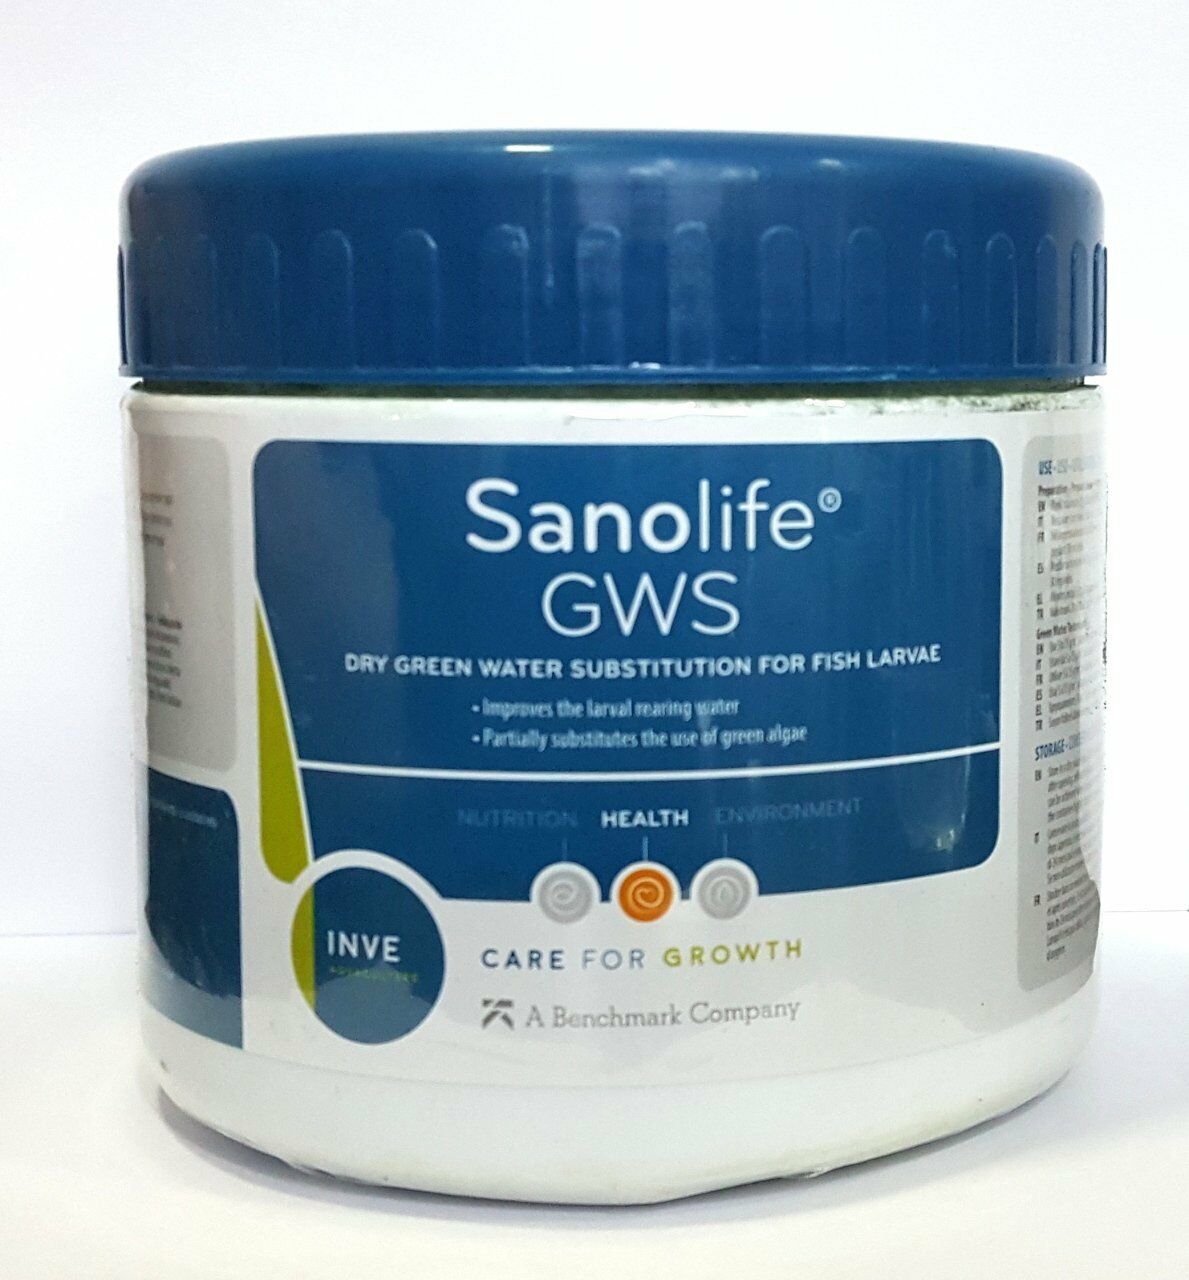 INVE Sanolife GWS 15 gr